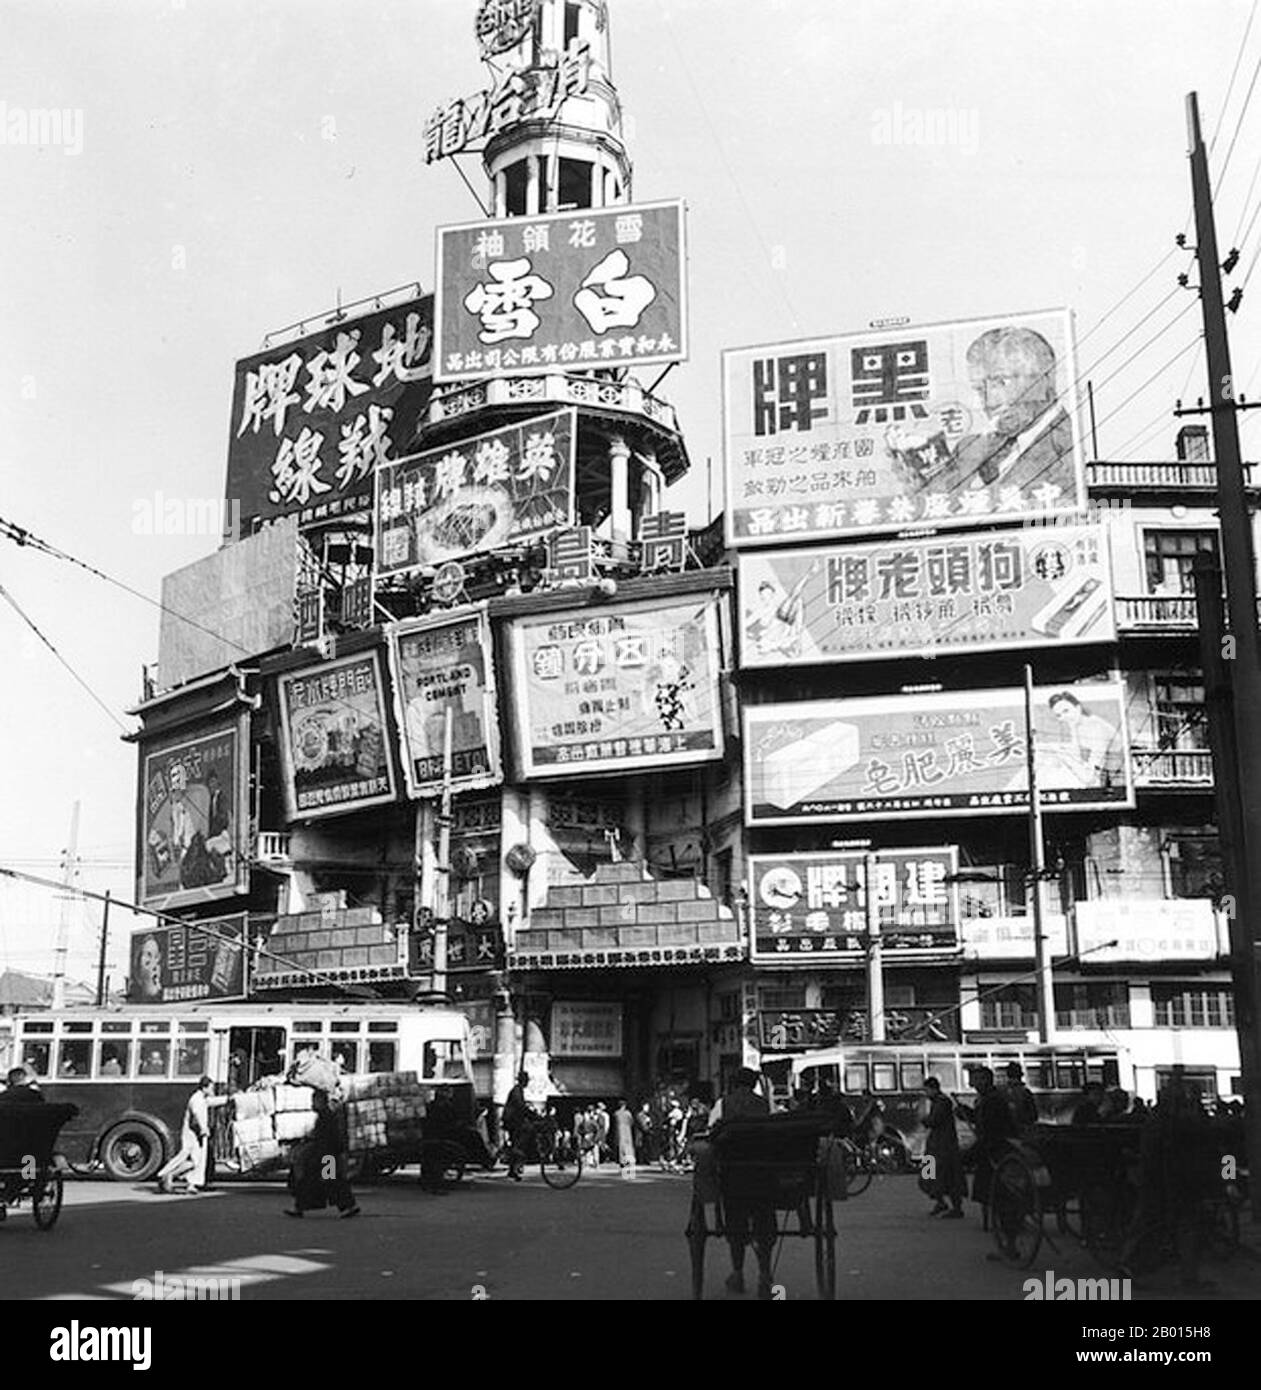 Chine : le Da Shijie de Shanghai ou le centre de divertissement Great World en 1948. Le Da Shijie ou le centre de divertissement du Grand monde de Shanghai, passé ses années 1930 de premier plan et couvert dans des annonces publicitaires, en 1948. Banque D'Images